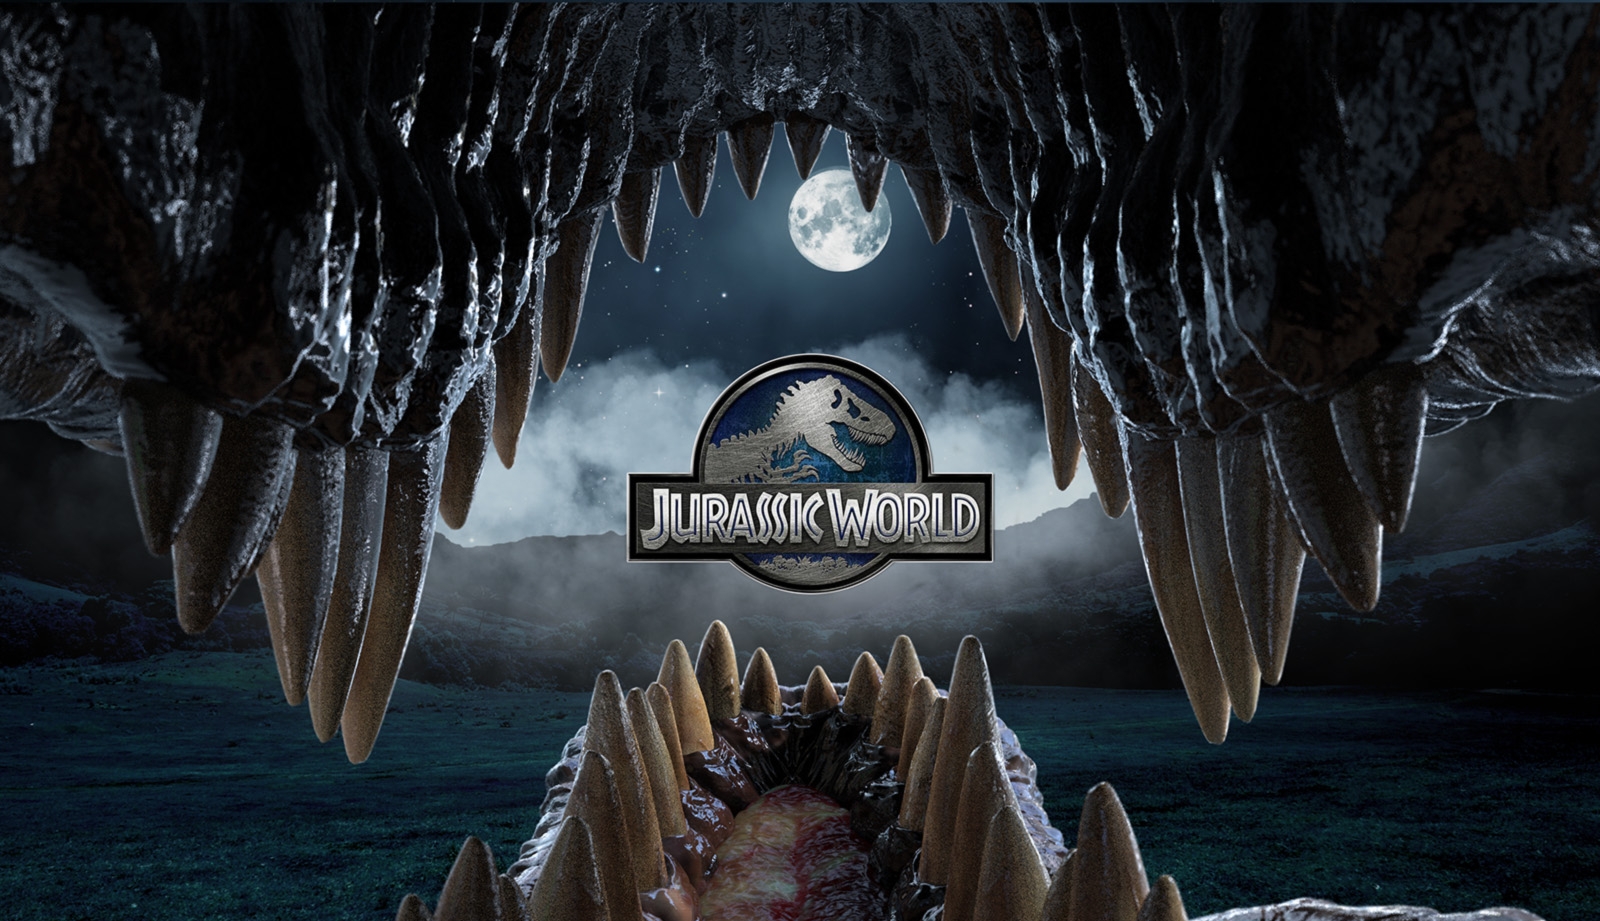 Jurassic World - spektakularny zwiastun wielkiego widowiska